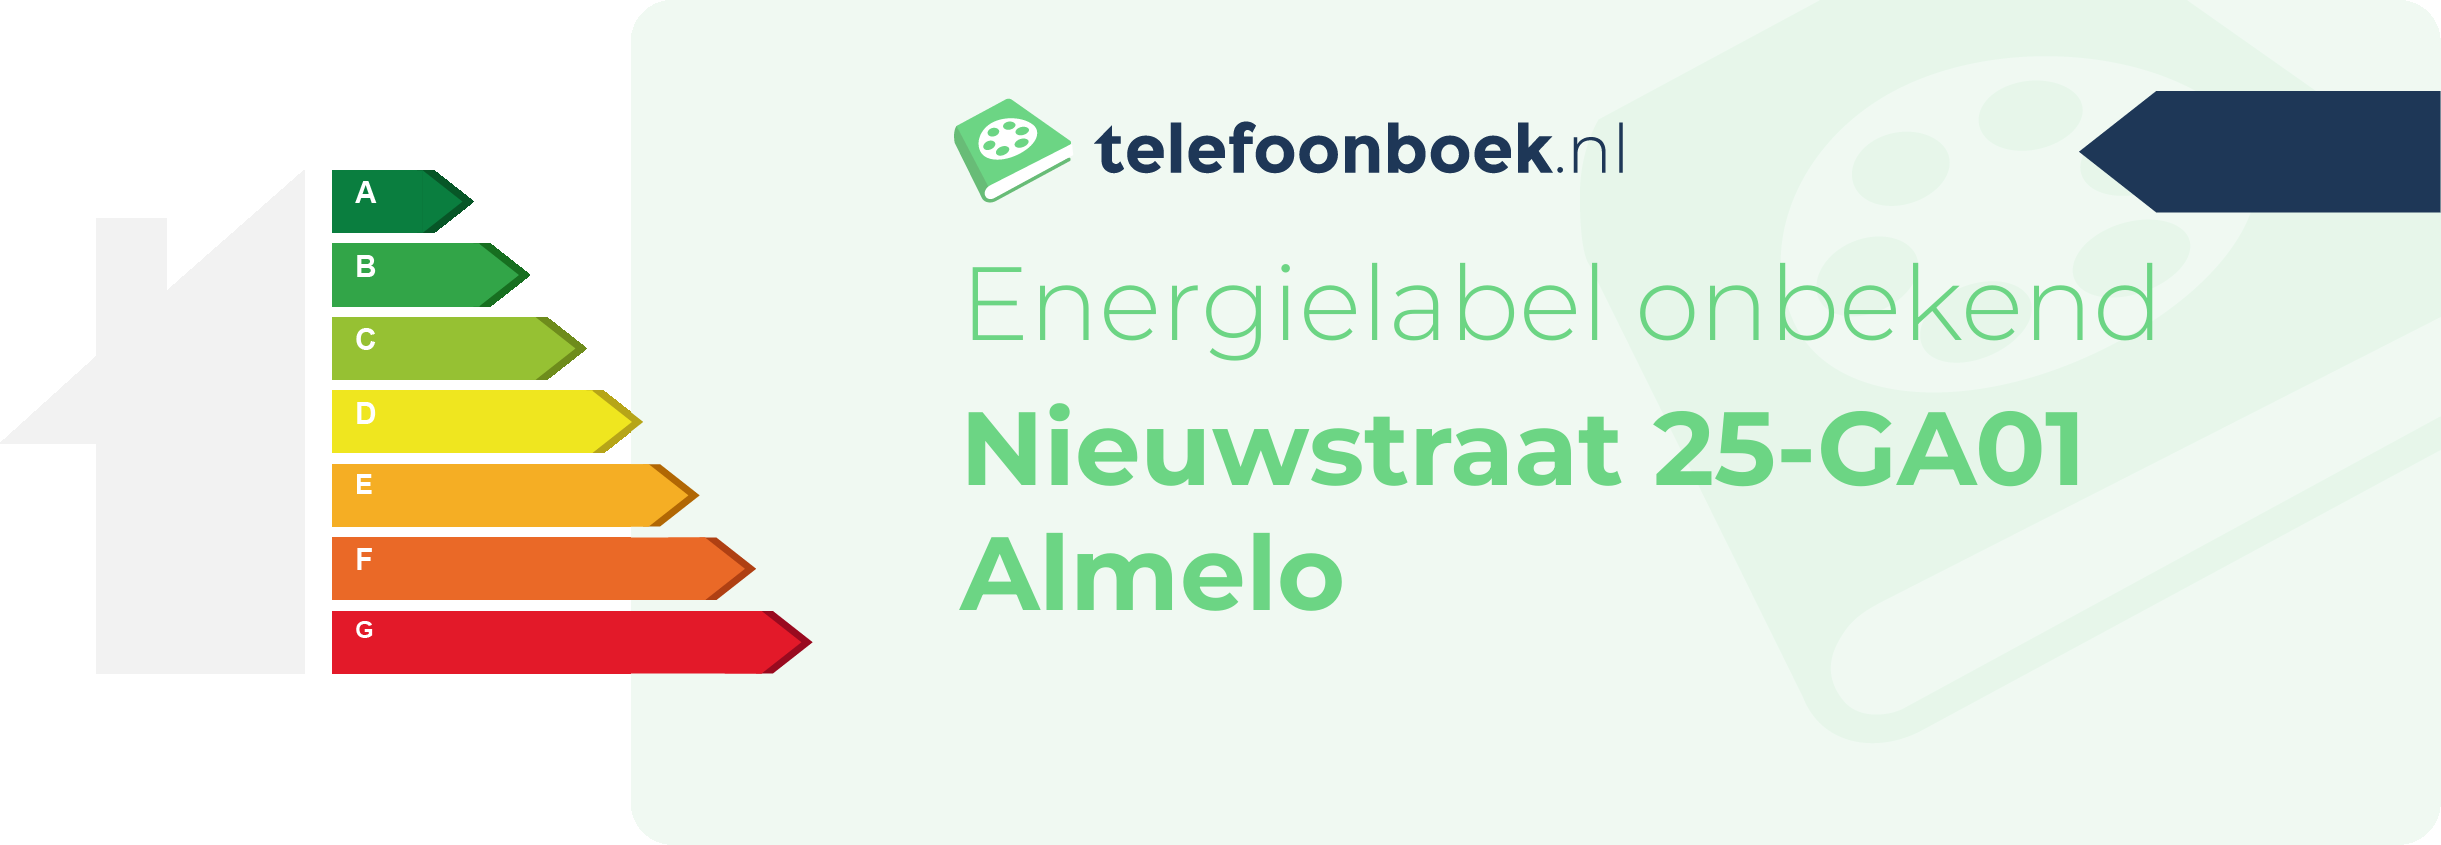 Energielabel Nieuwstraat 25-GA01 Almelo